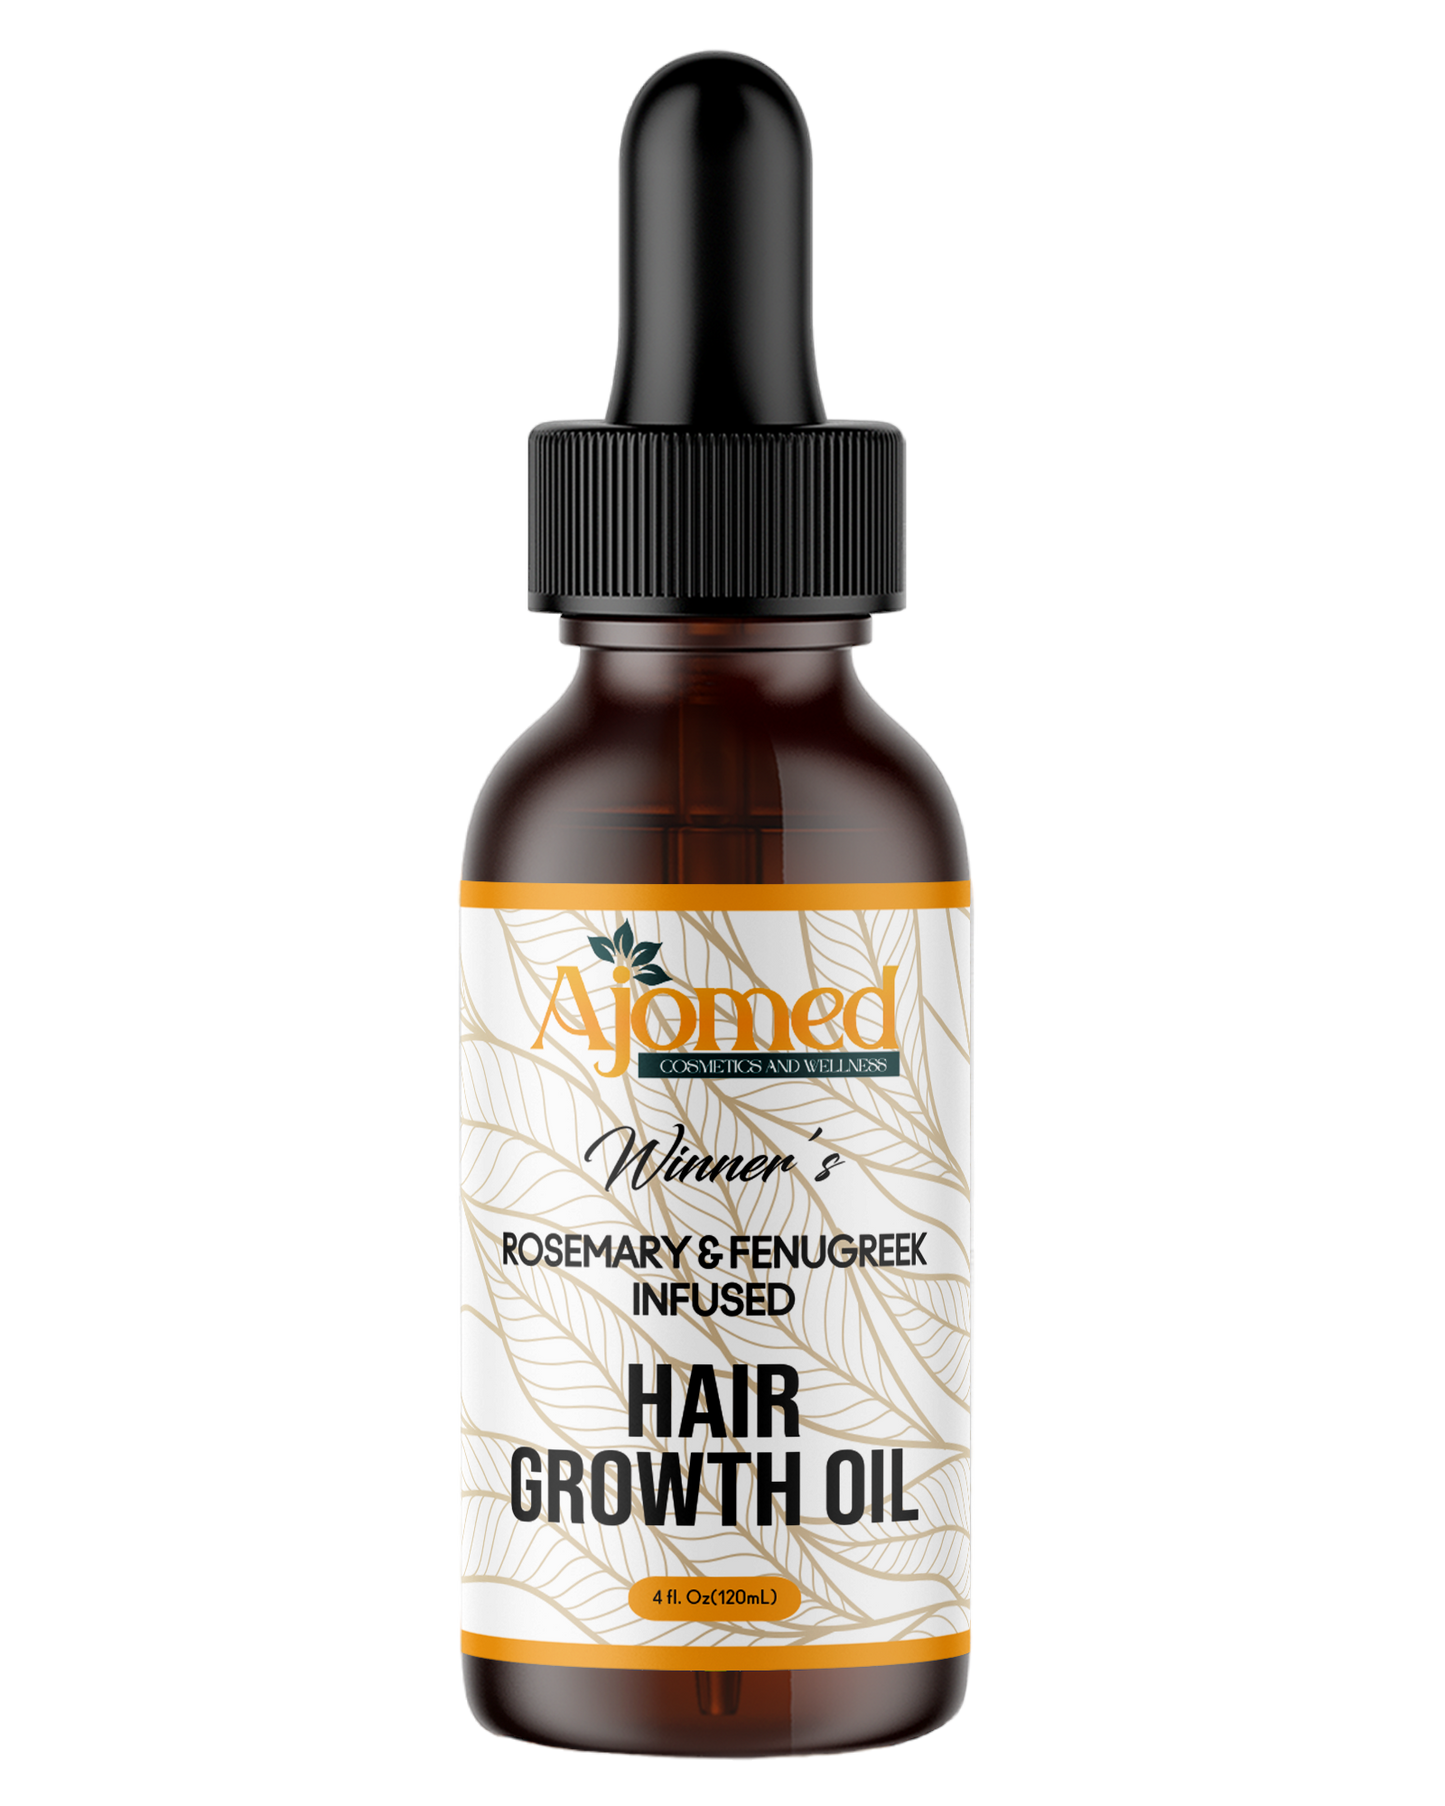 Rosemary & Fenugreek Seed Hair Growth Oil - Herbal Infused Oil - 4fl.Oz